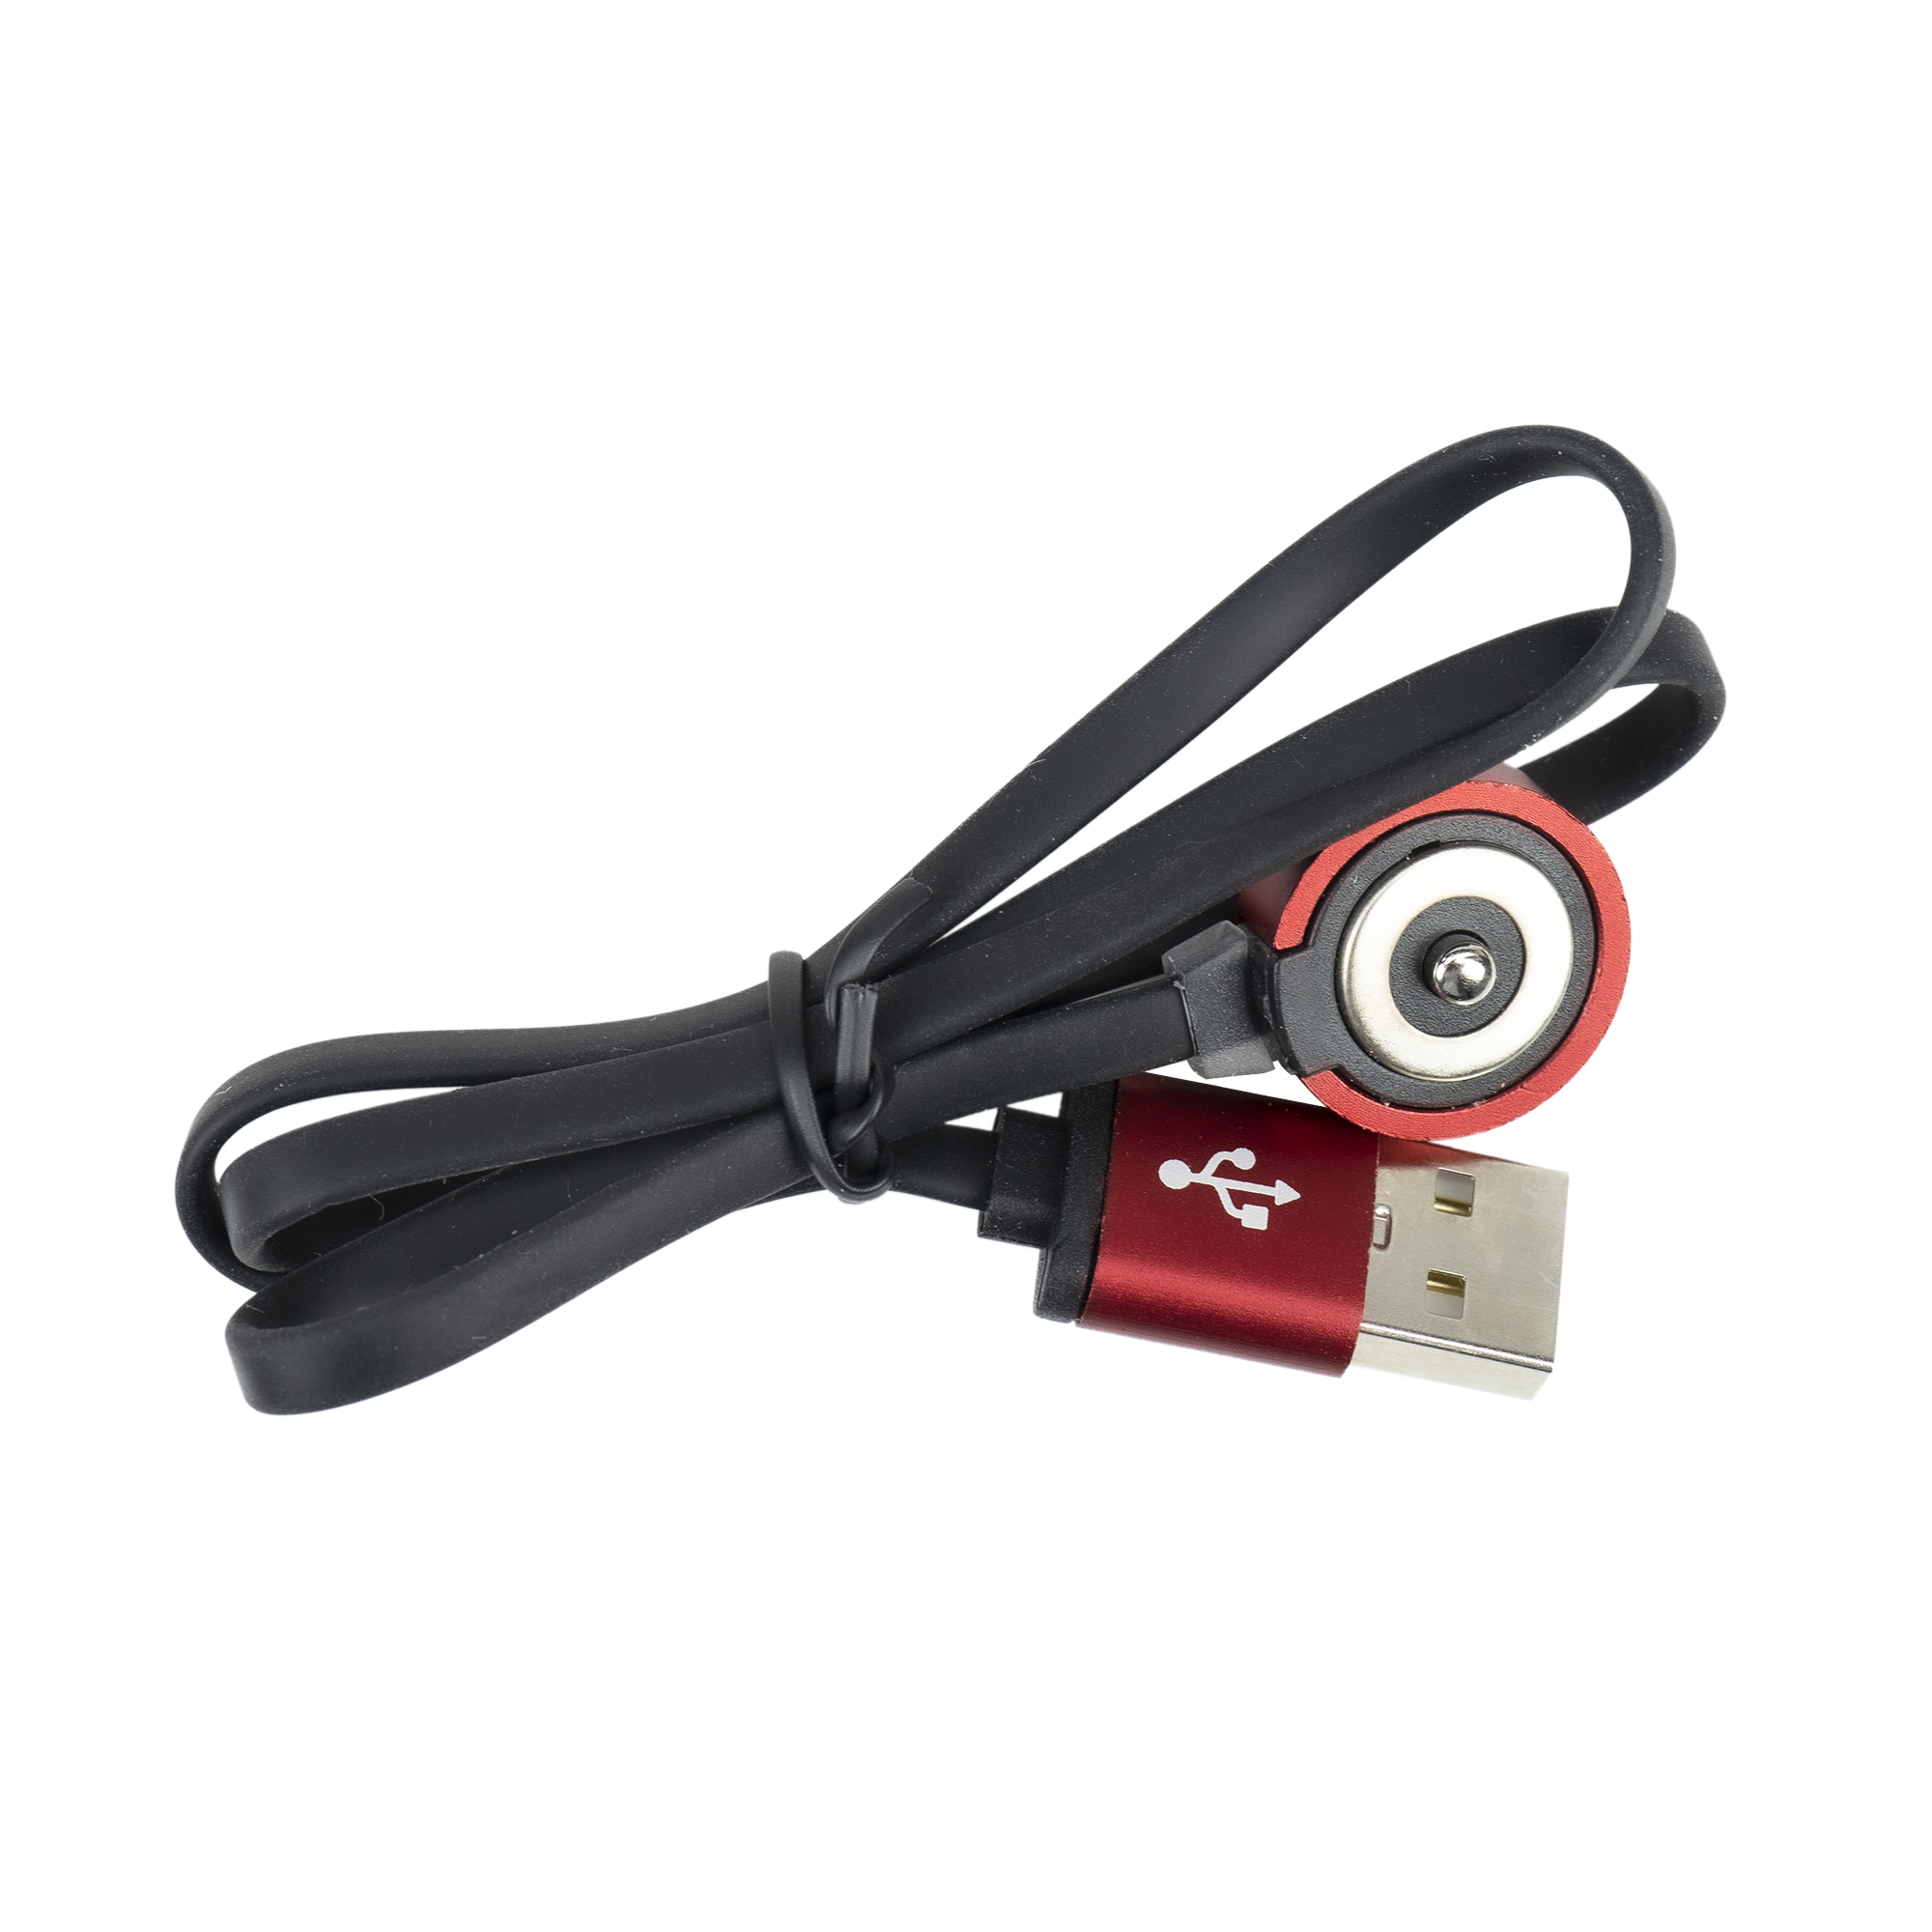 Cablu USB pentru incarcare lanterne PNI Adventure F75, cu contact magnetic, lungime 50 cm image7